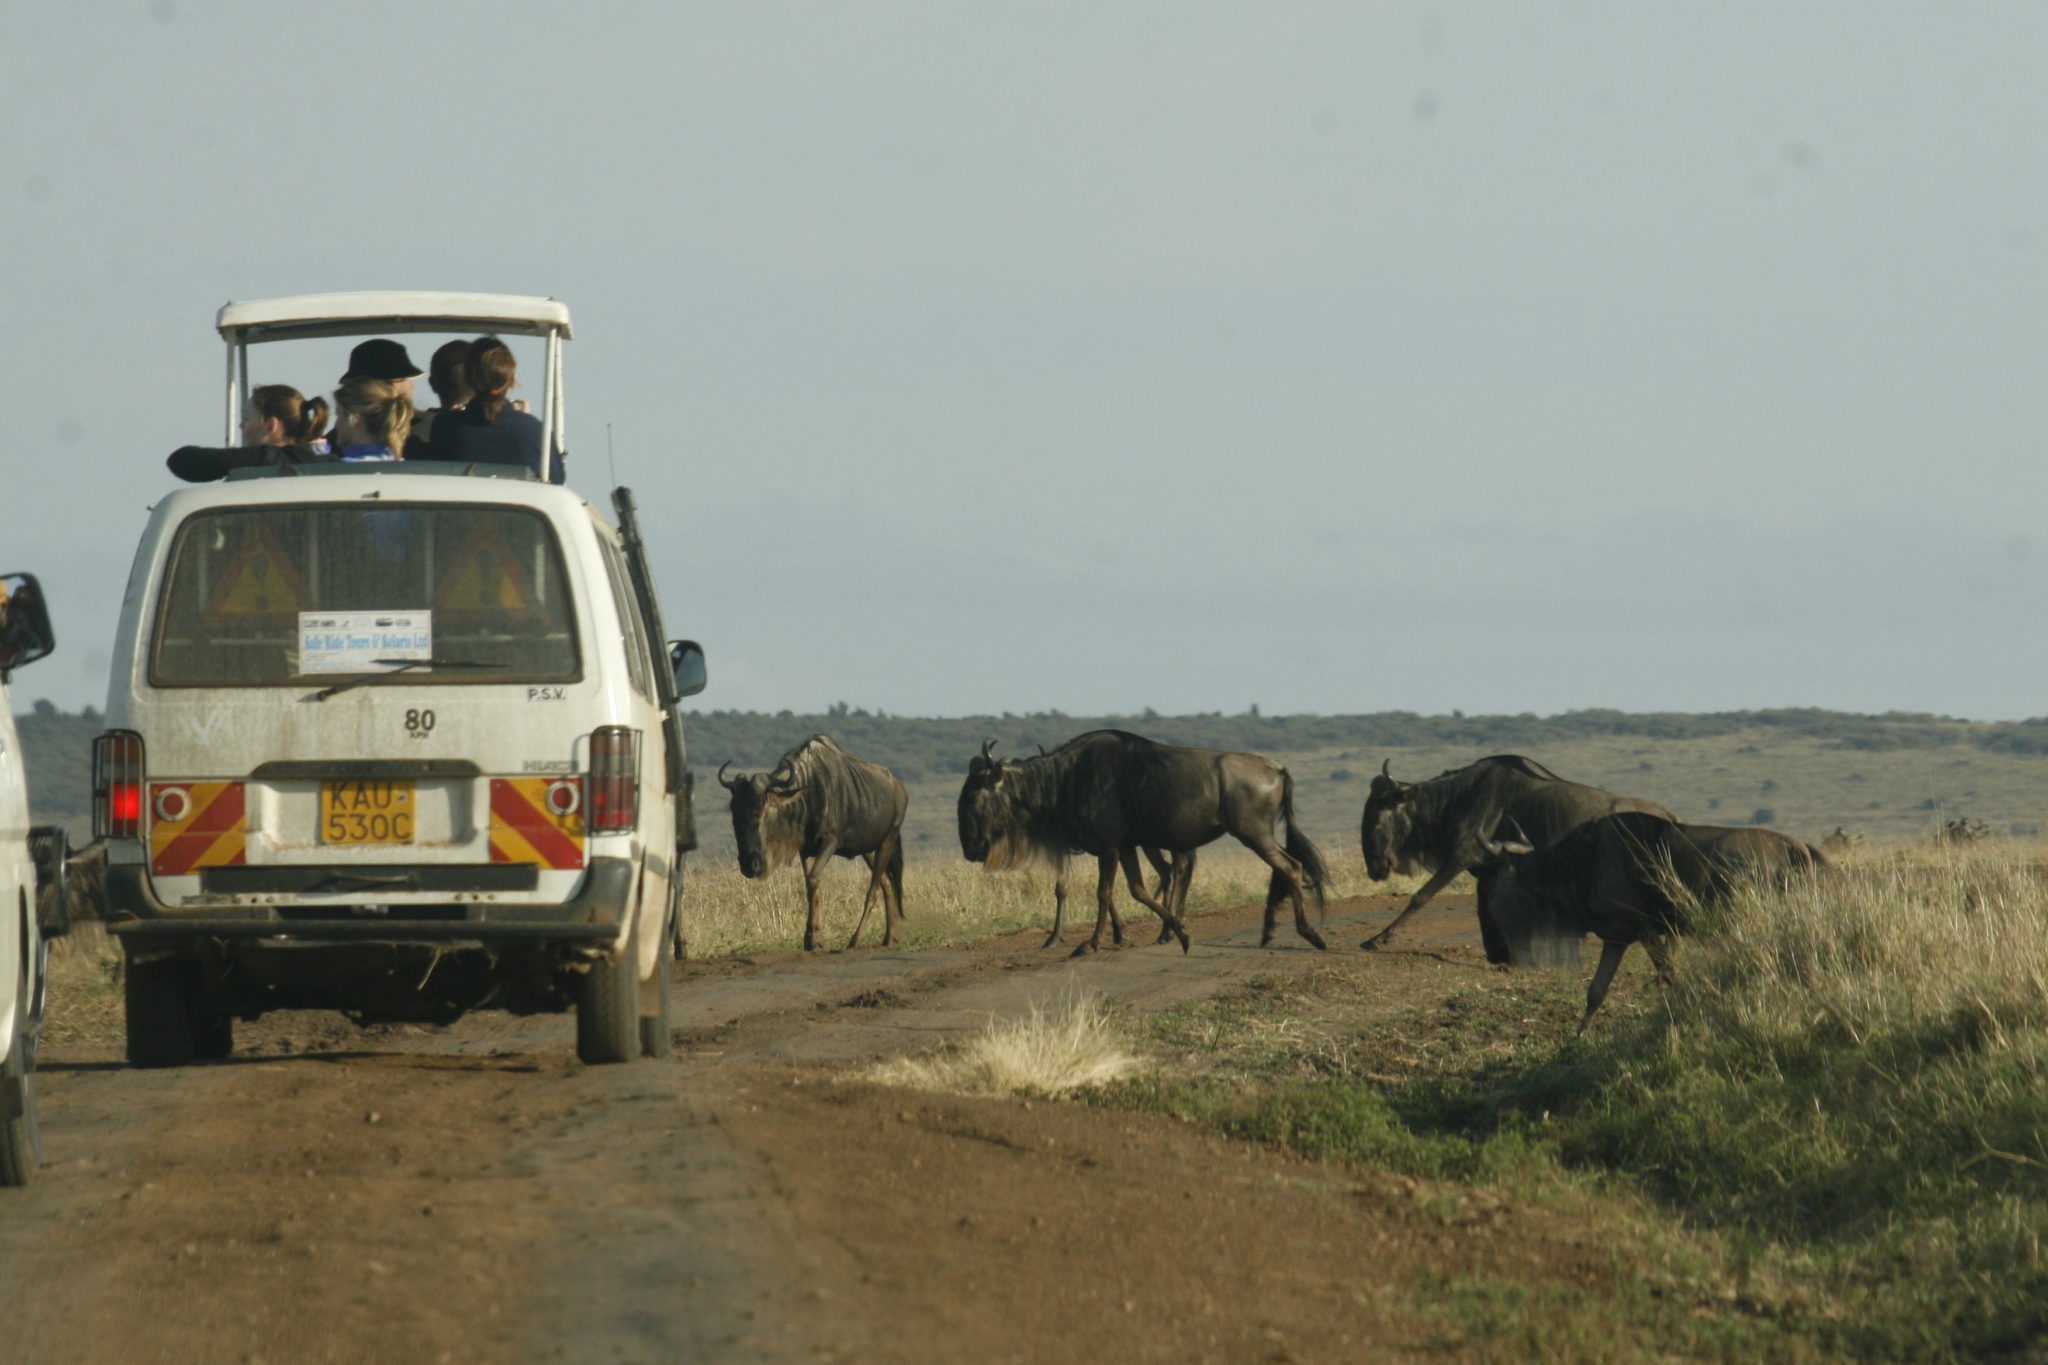 Safari in kenya, safari in africa, african safari